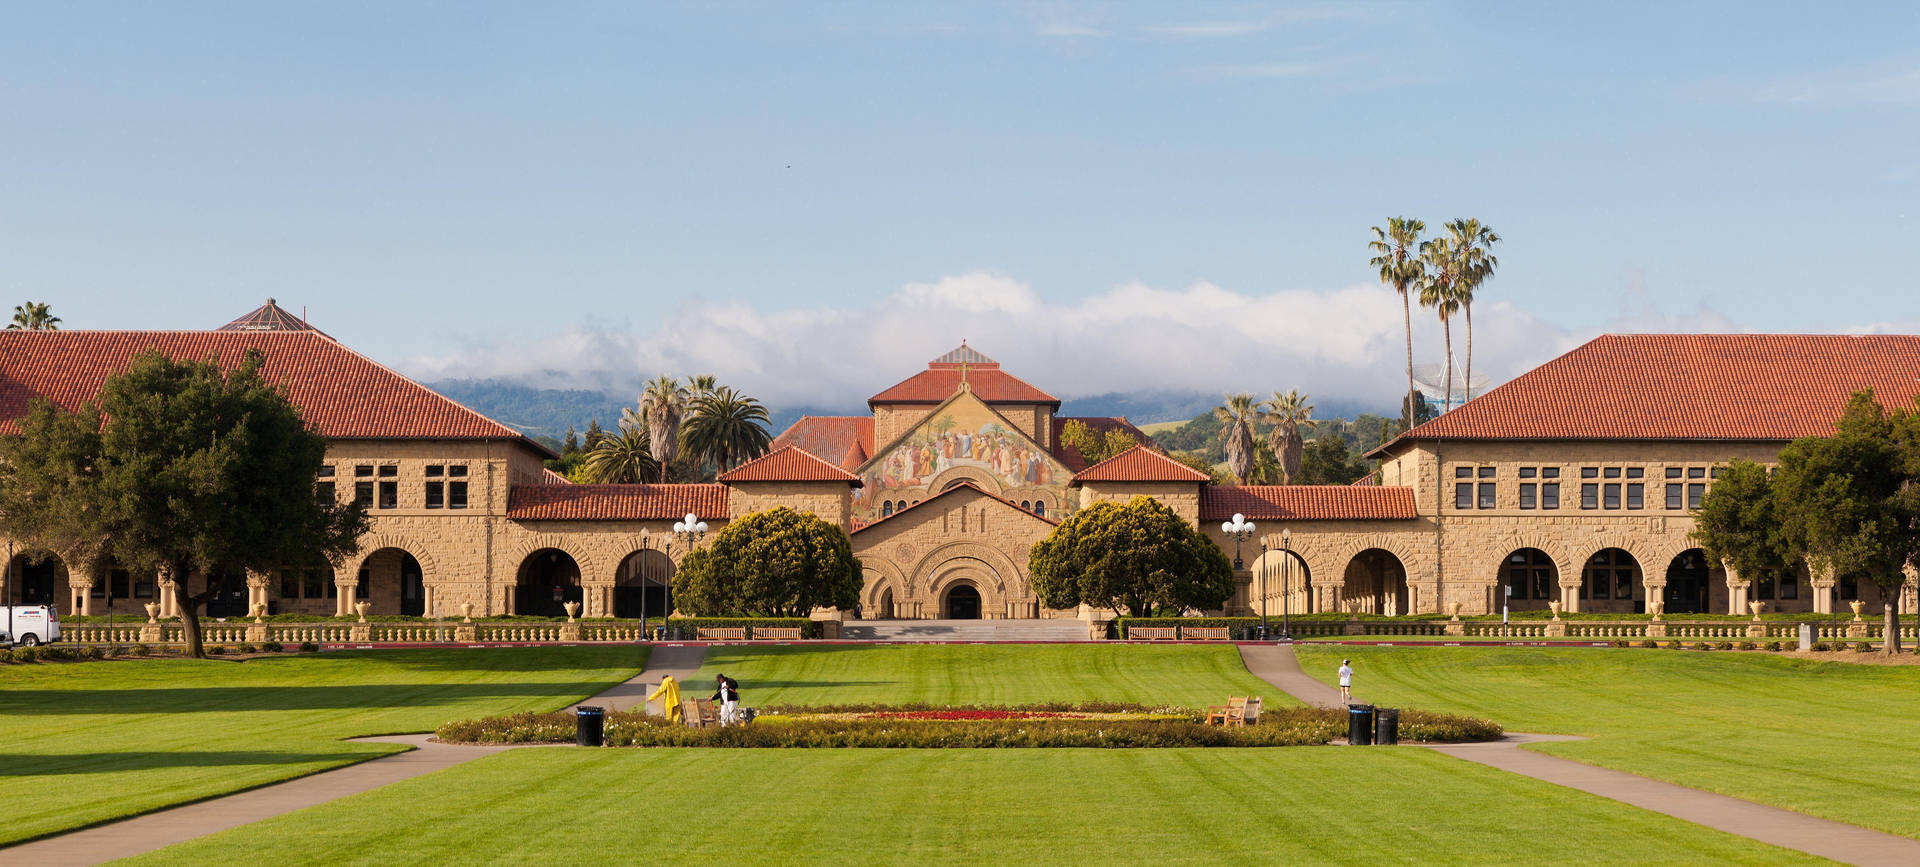 Stanforduniversität Weites Oval Wallpaper